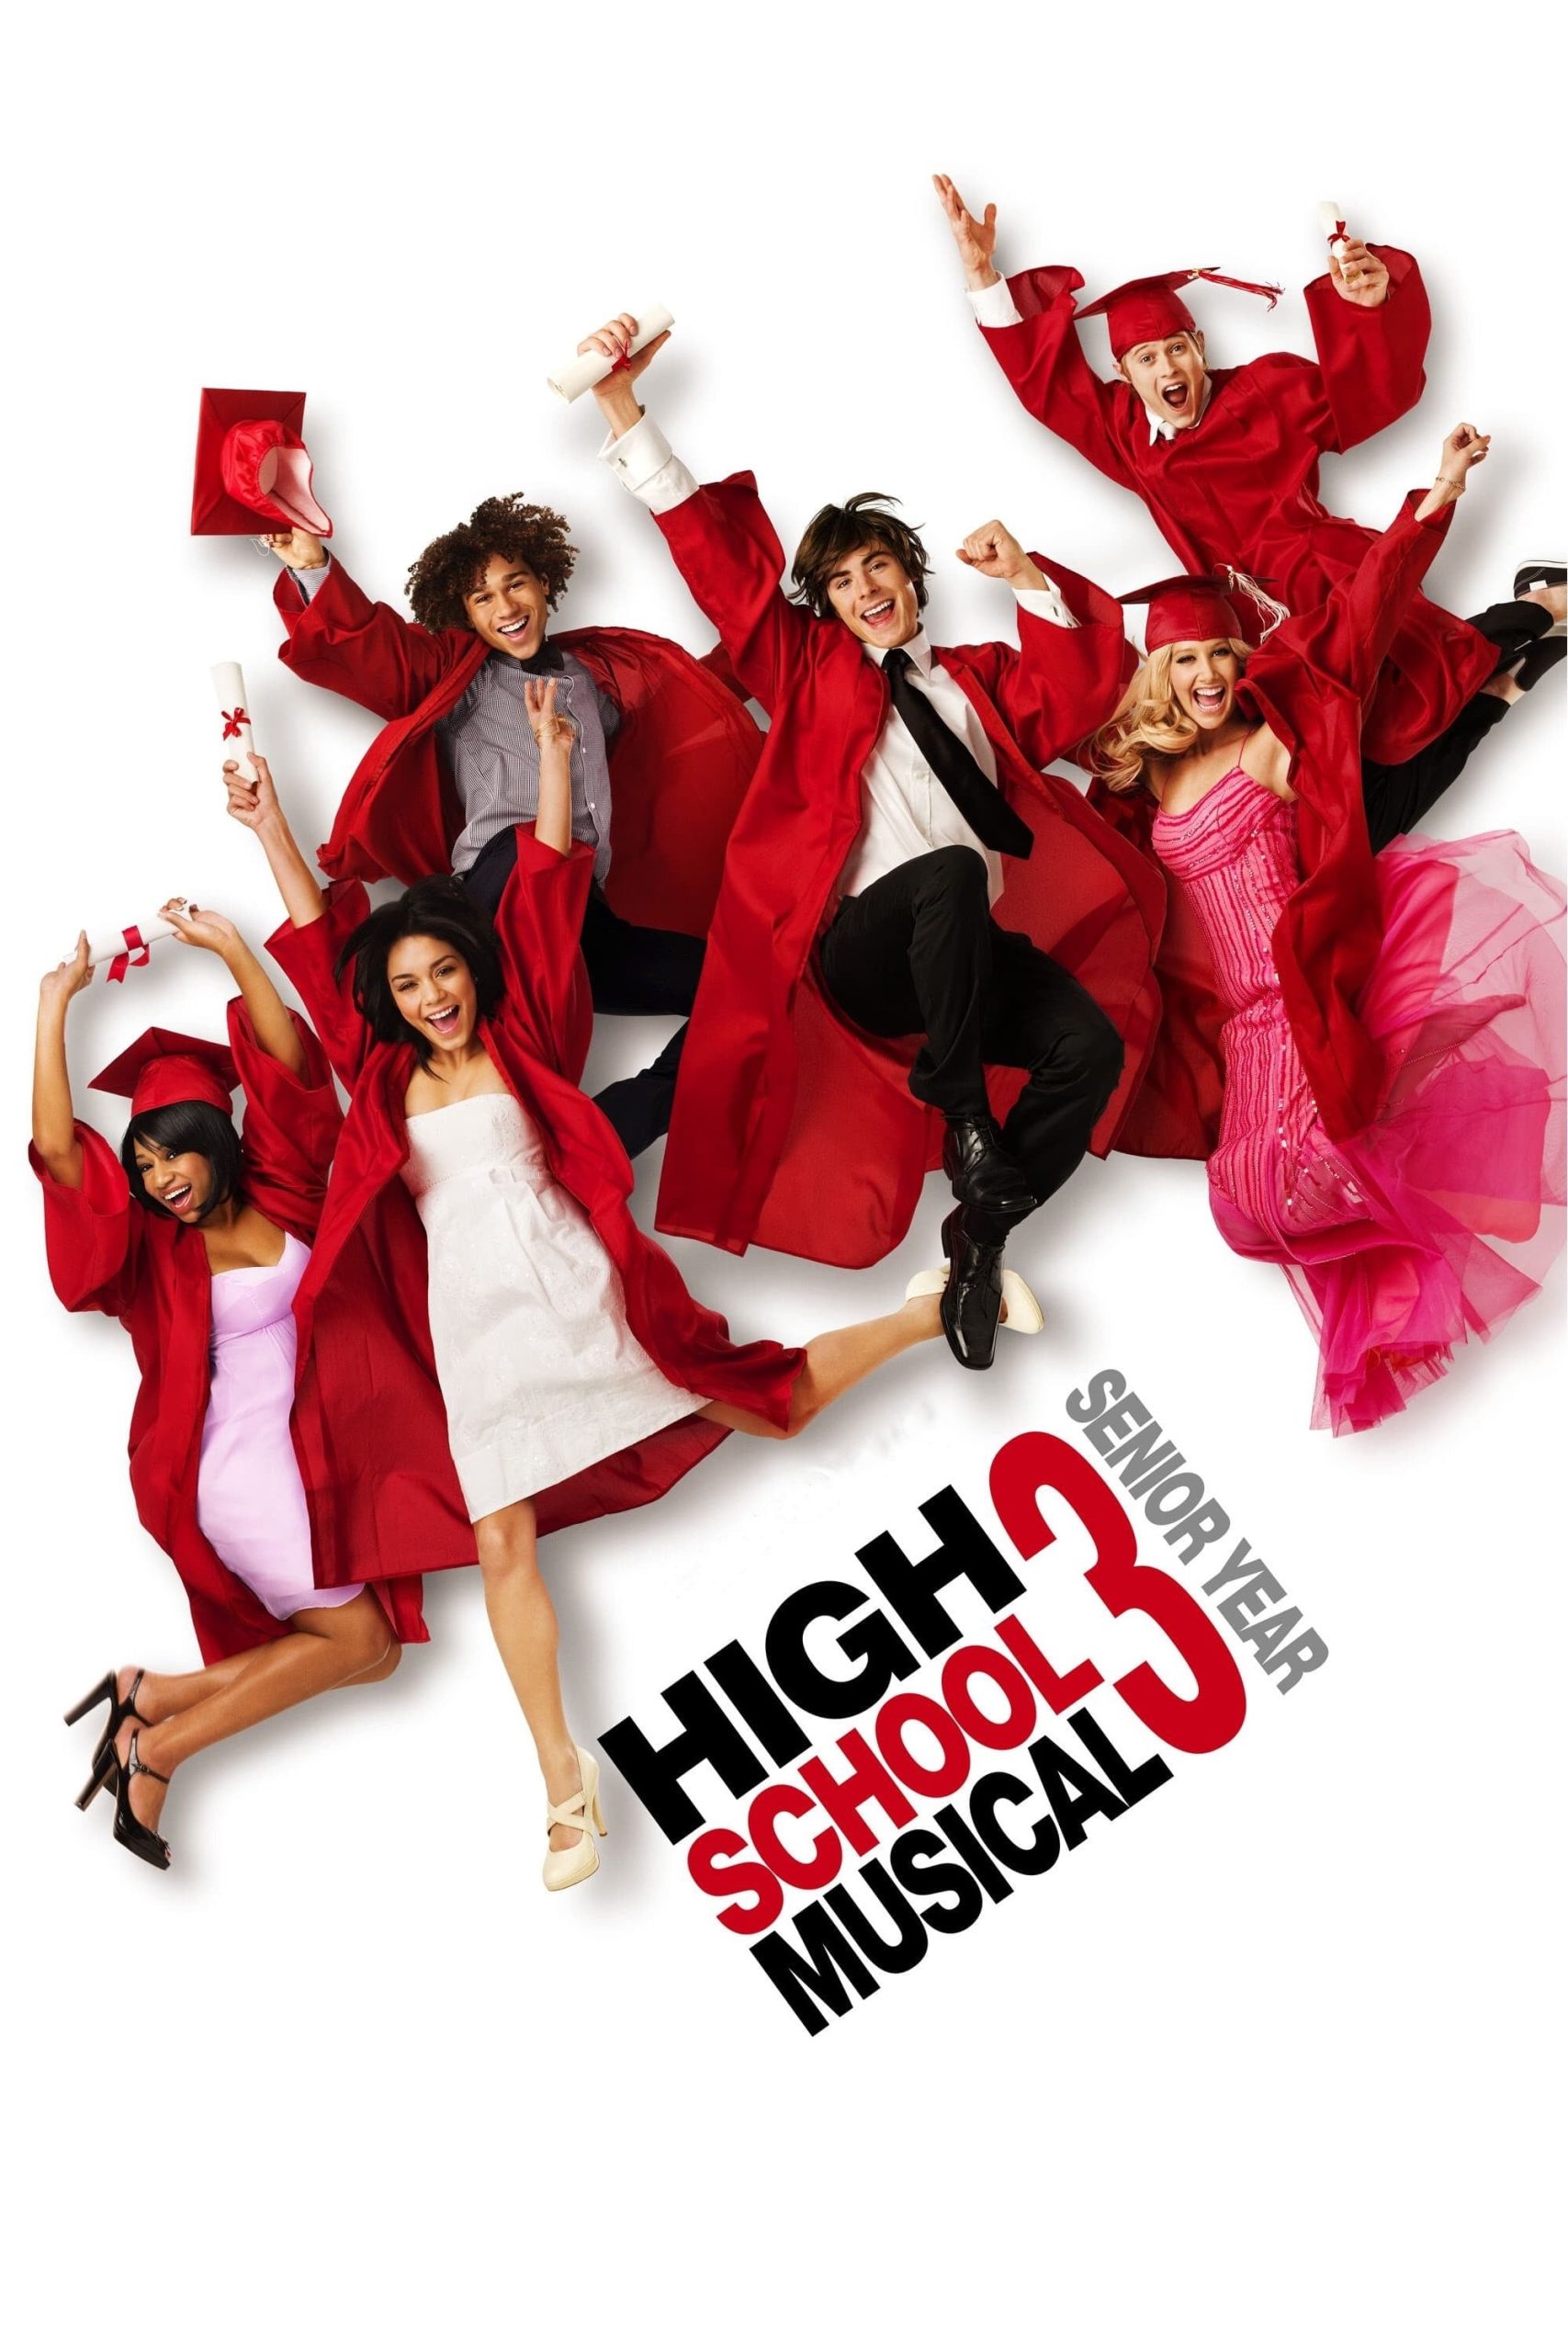 ดูหนังออนไลน์ฟรี High School Musical 3: Senior Year